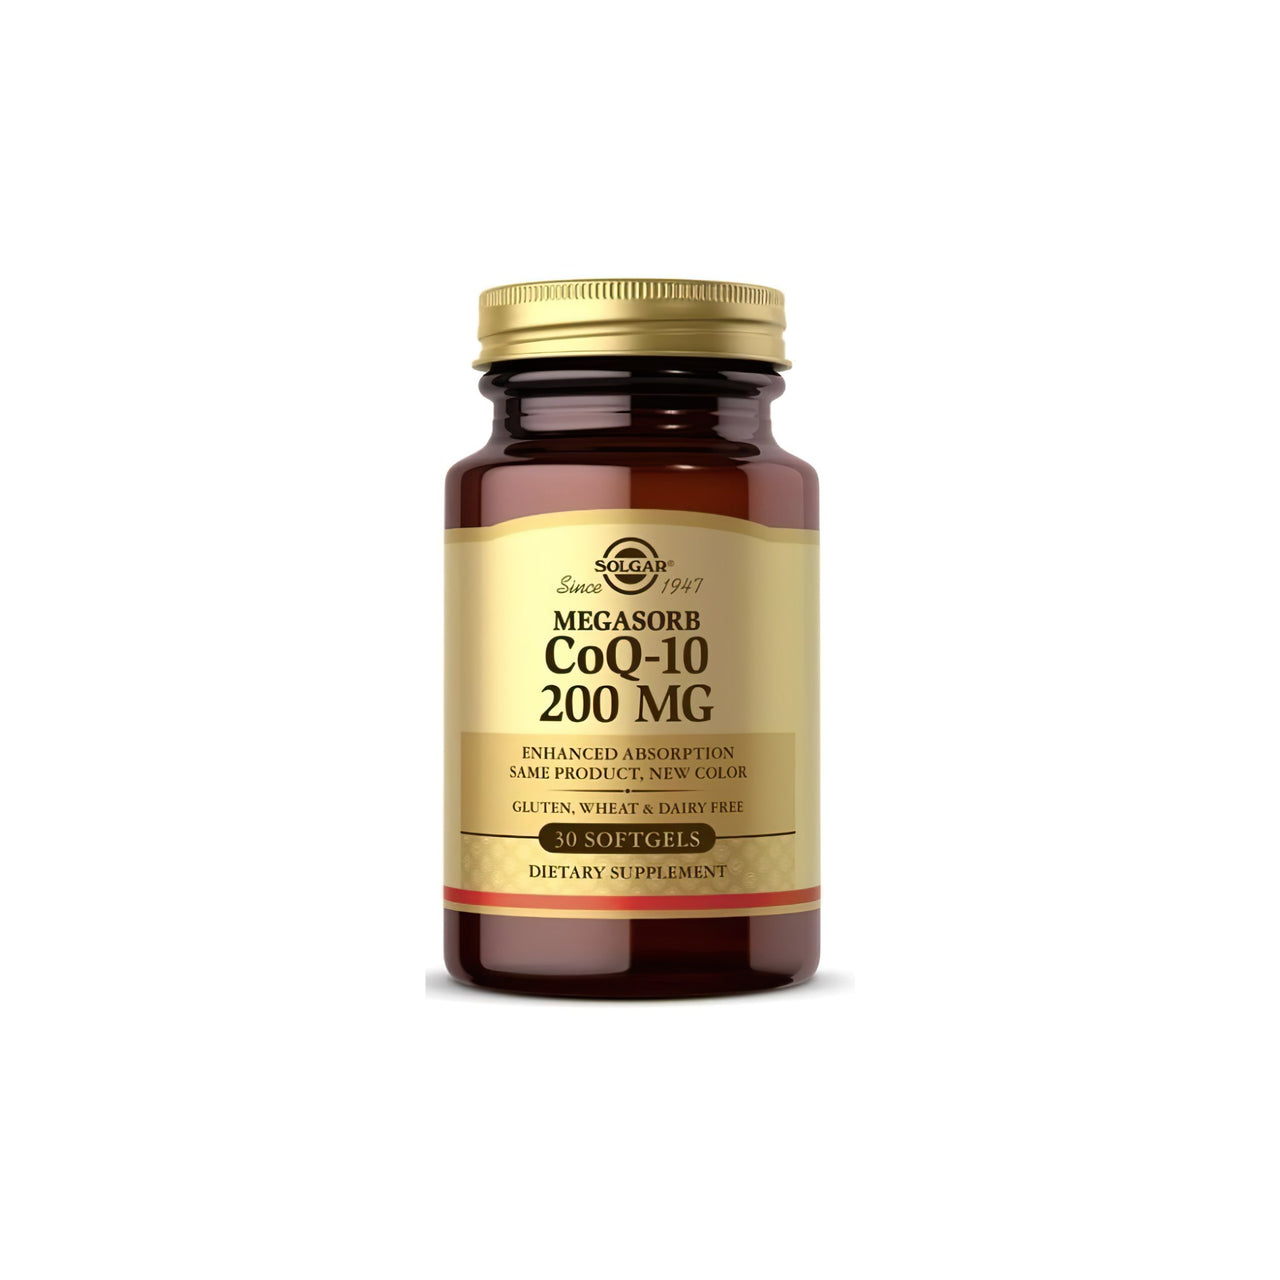 Un frasco de Solgar Megasorb CoQ-10 200 mg 30 Softgels sobre fondo blanco.